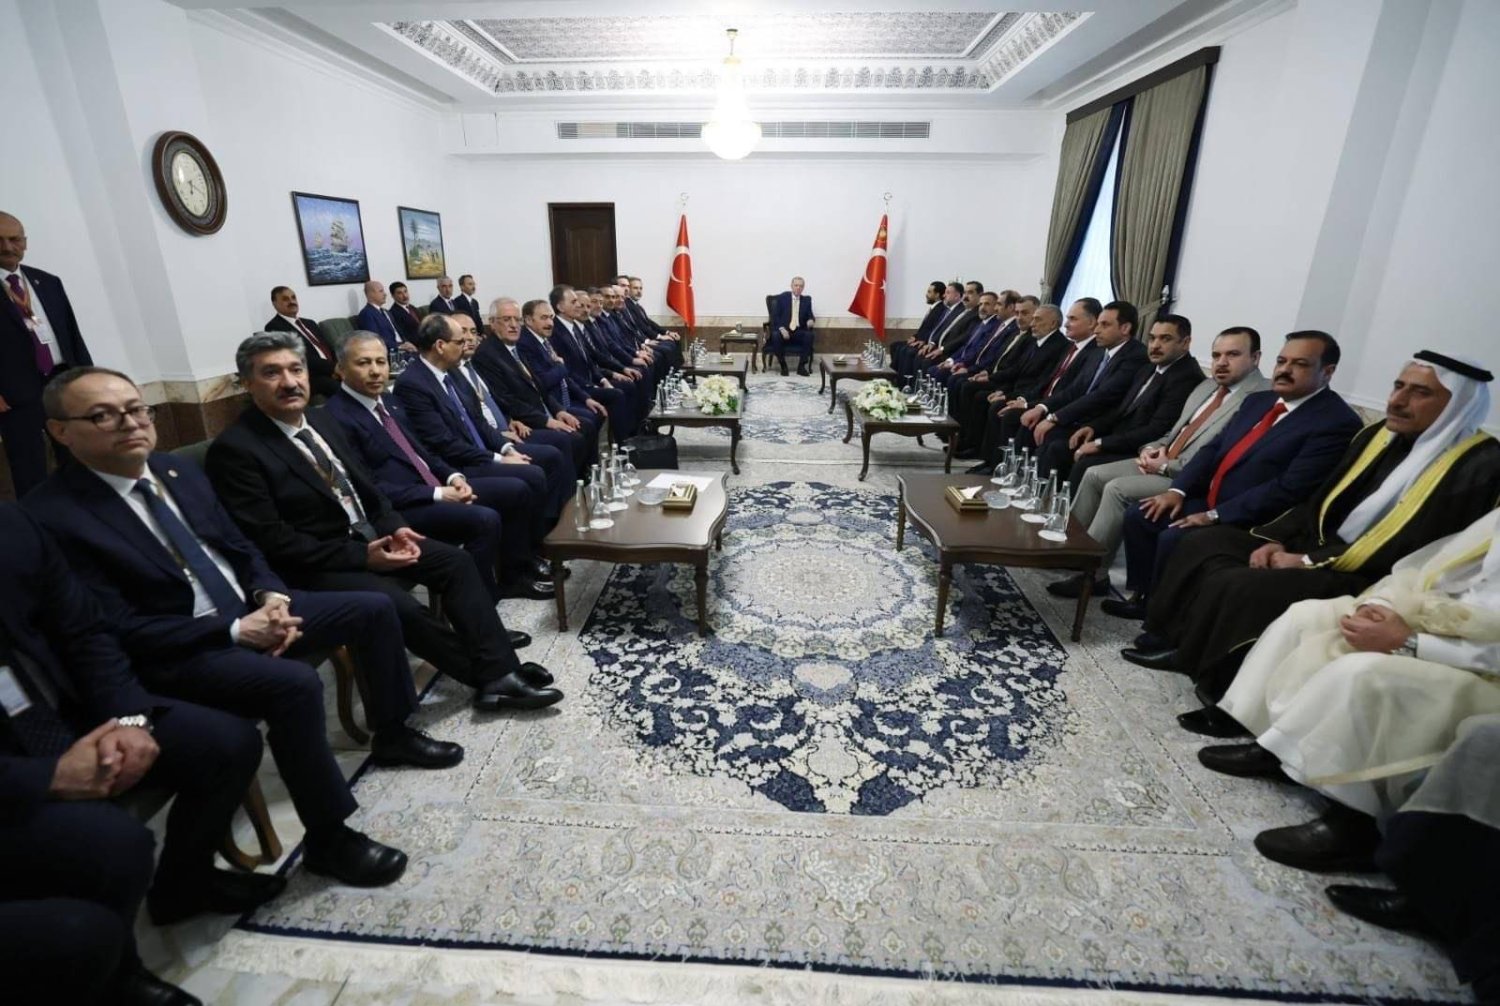 الرئيس التركي يتوسط جلسة ضمت قادة أحزاب سنية عراقية في بغداد (إعلام حزب تقدم)